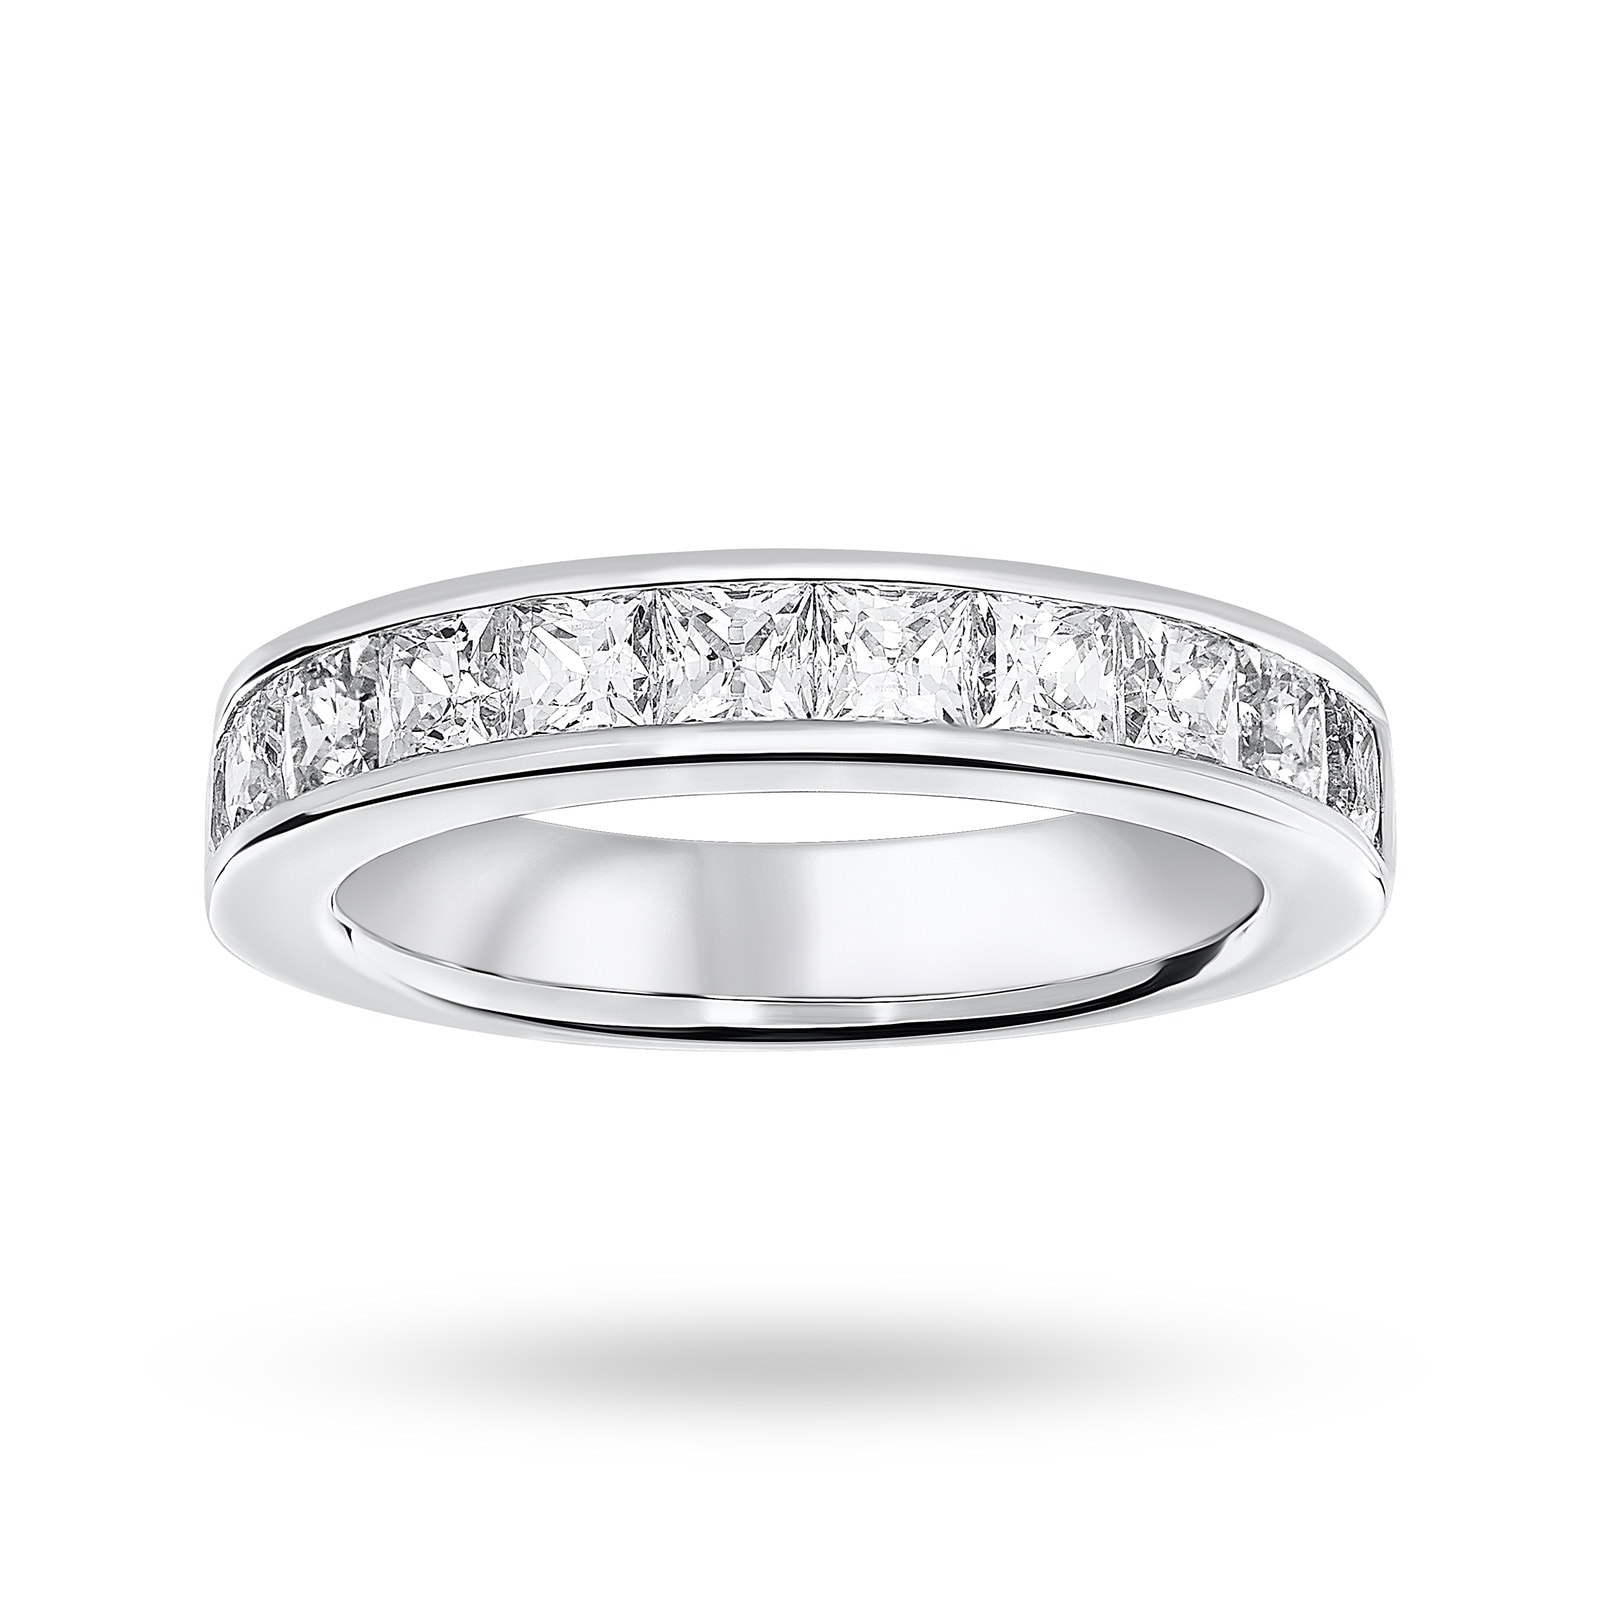 18 Carat White Gold 2.00 Carat Princess Cut Half Eternity Ring - Ring Size N